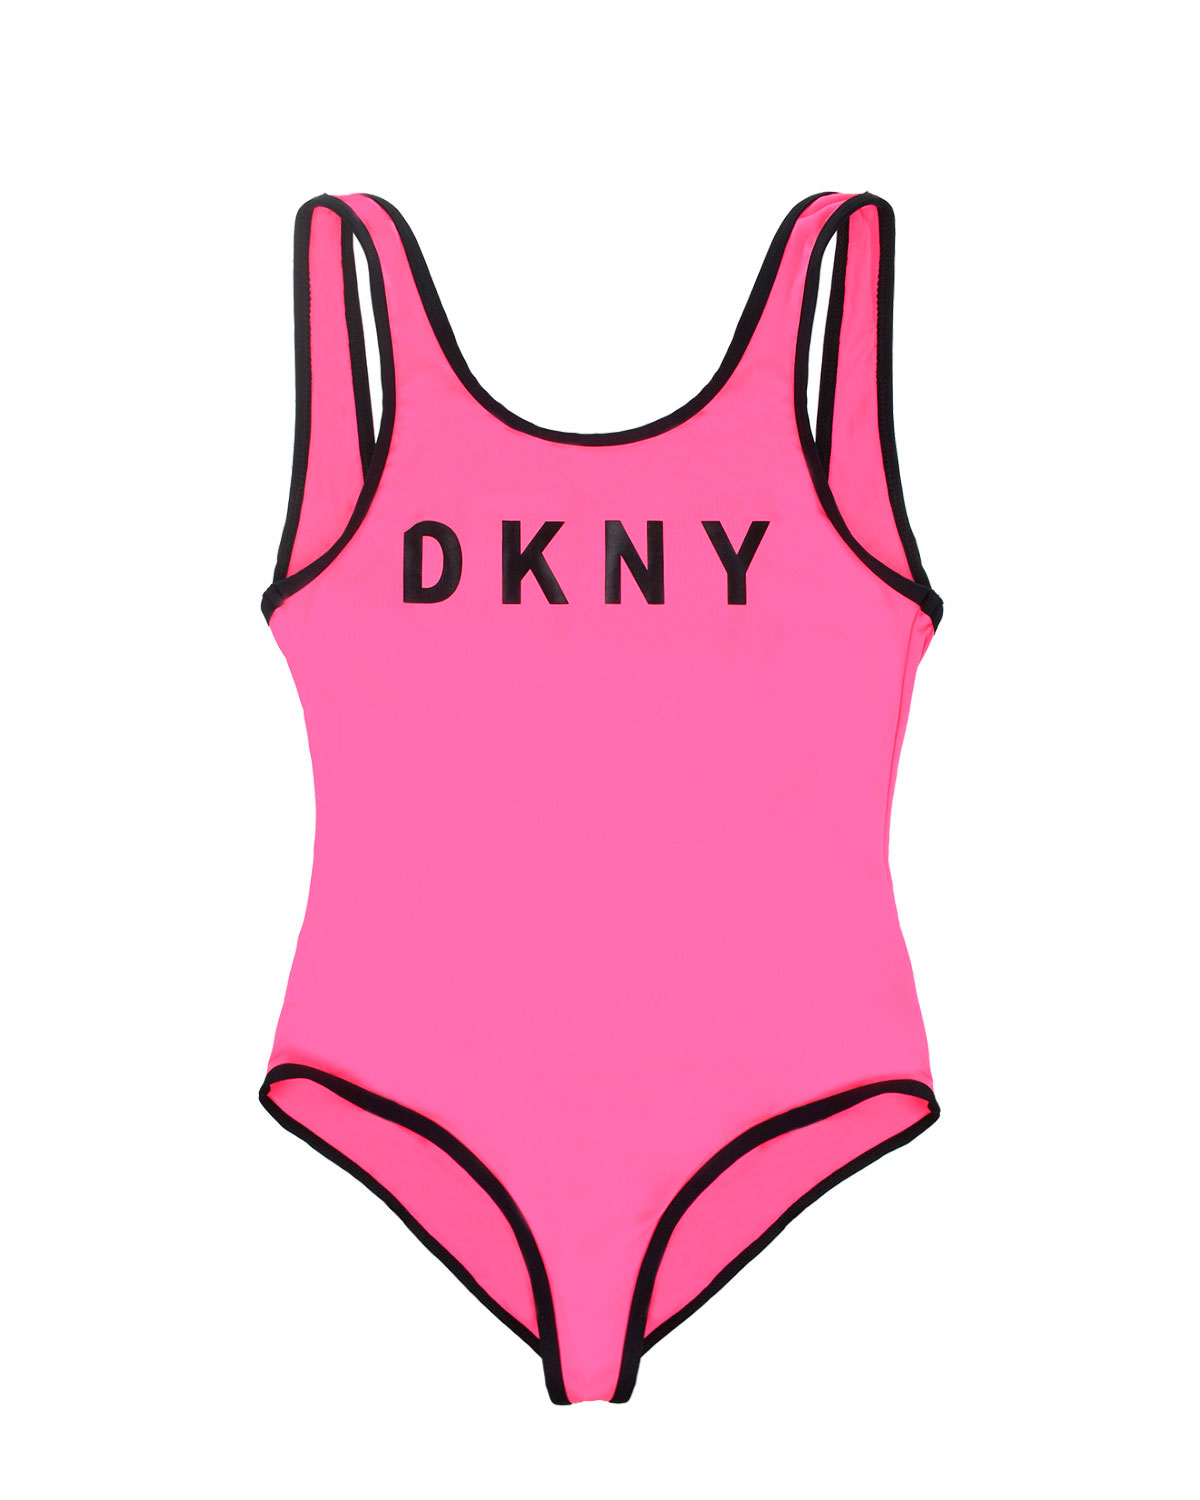 Закрытый купальник с контрастной отделкой DKNY детский